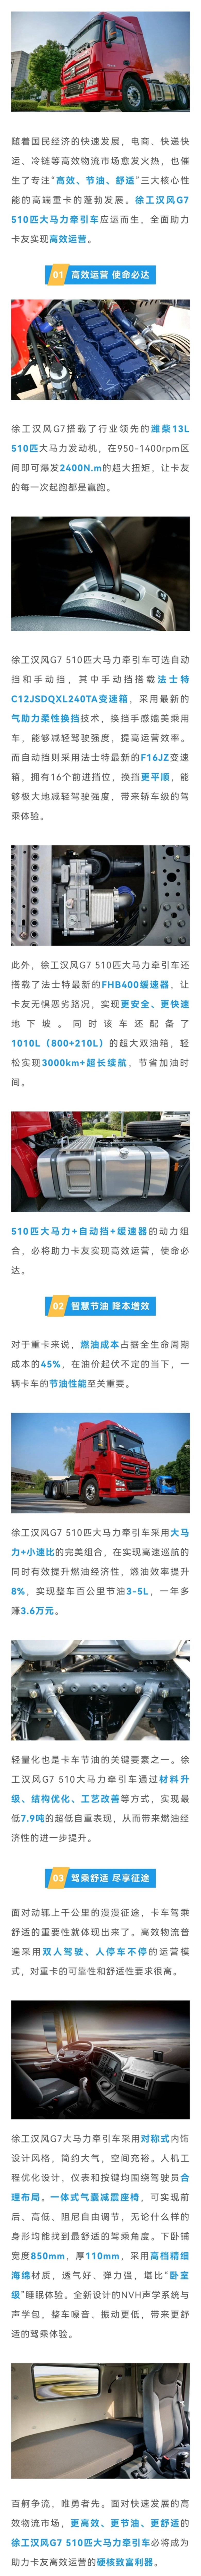 竞逐大马力赛道！汉风G7 510 自动挡牵引车重磅来袭！